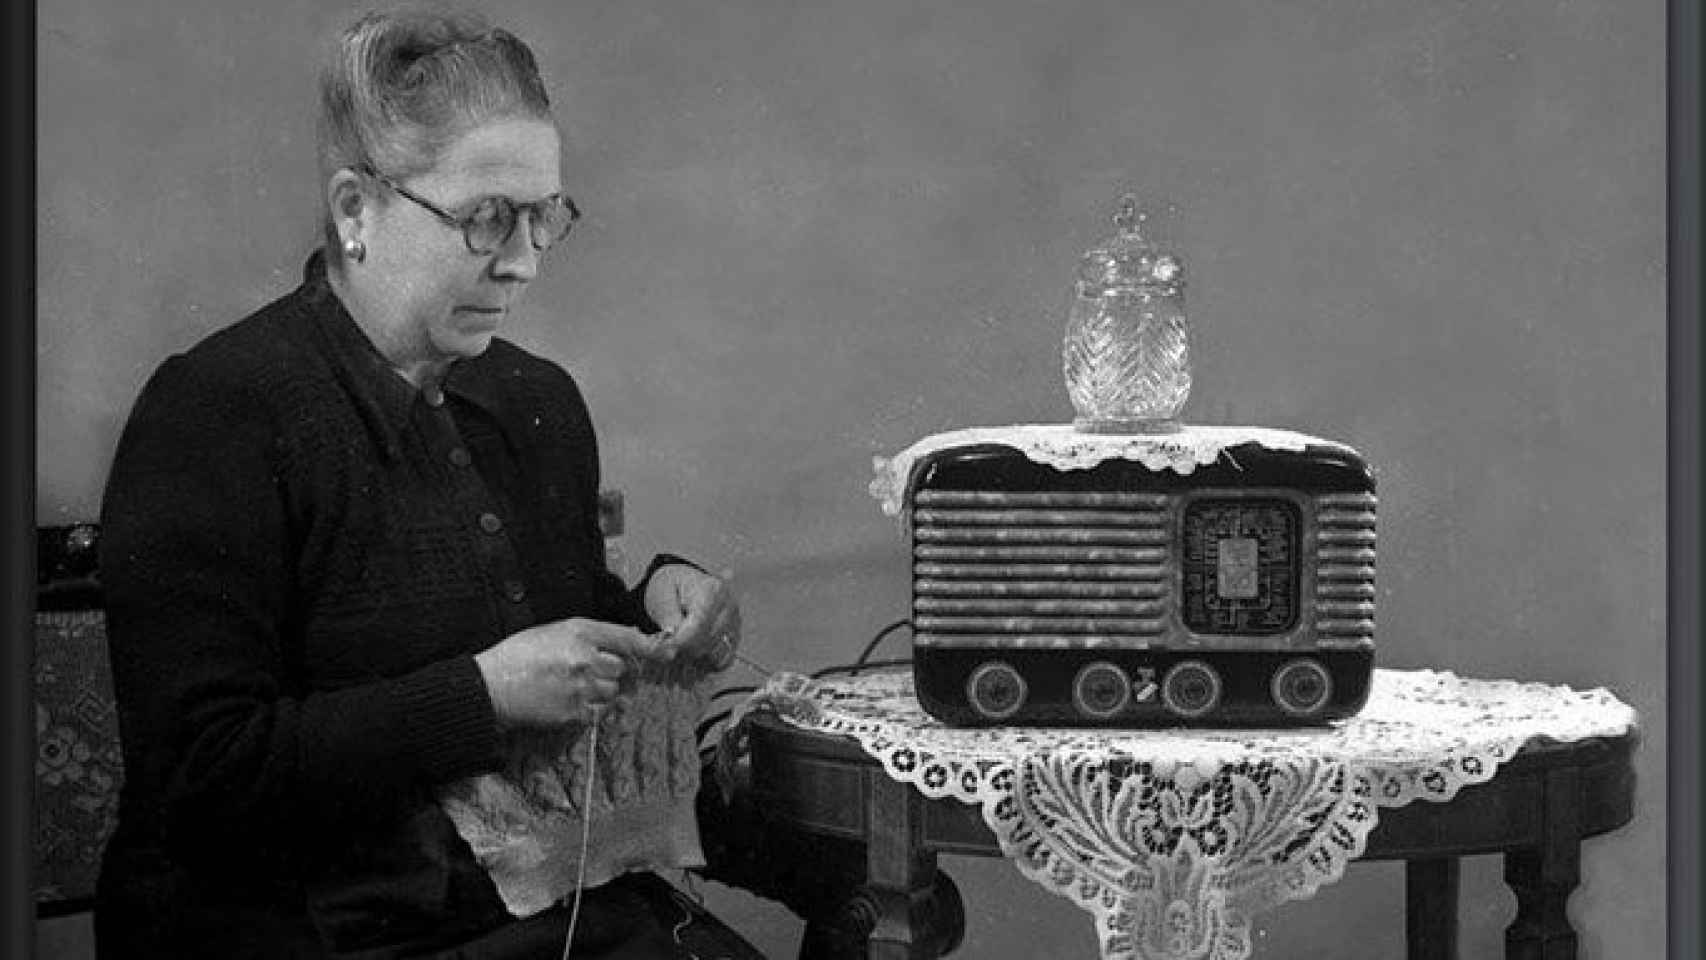 El consultorio radiofónico de Elena Francis forma parte de una generación de postguerra / CG